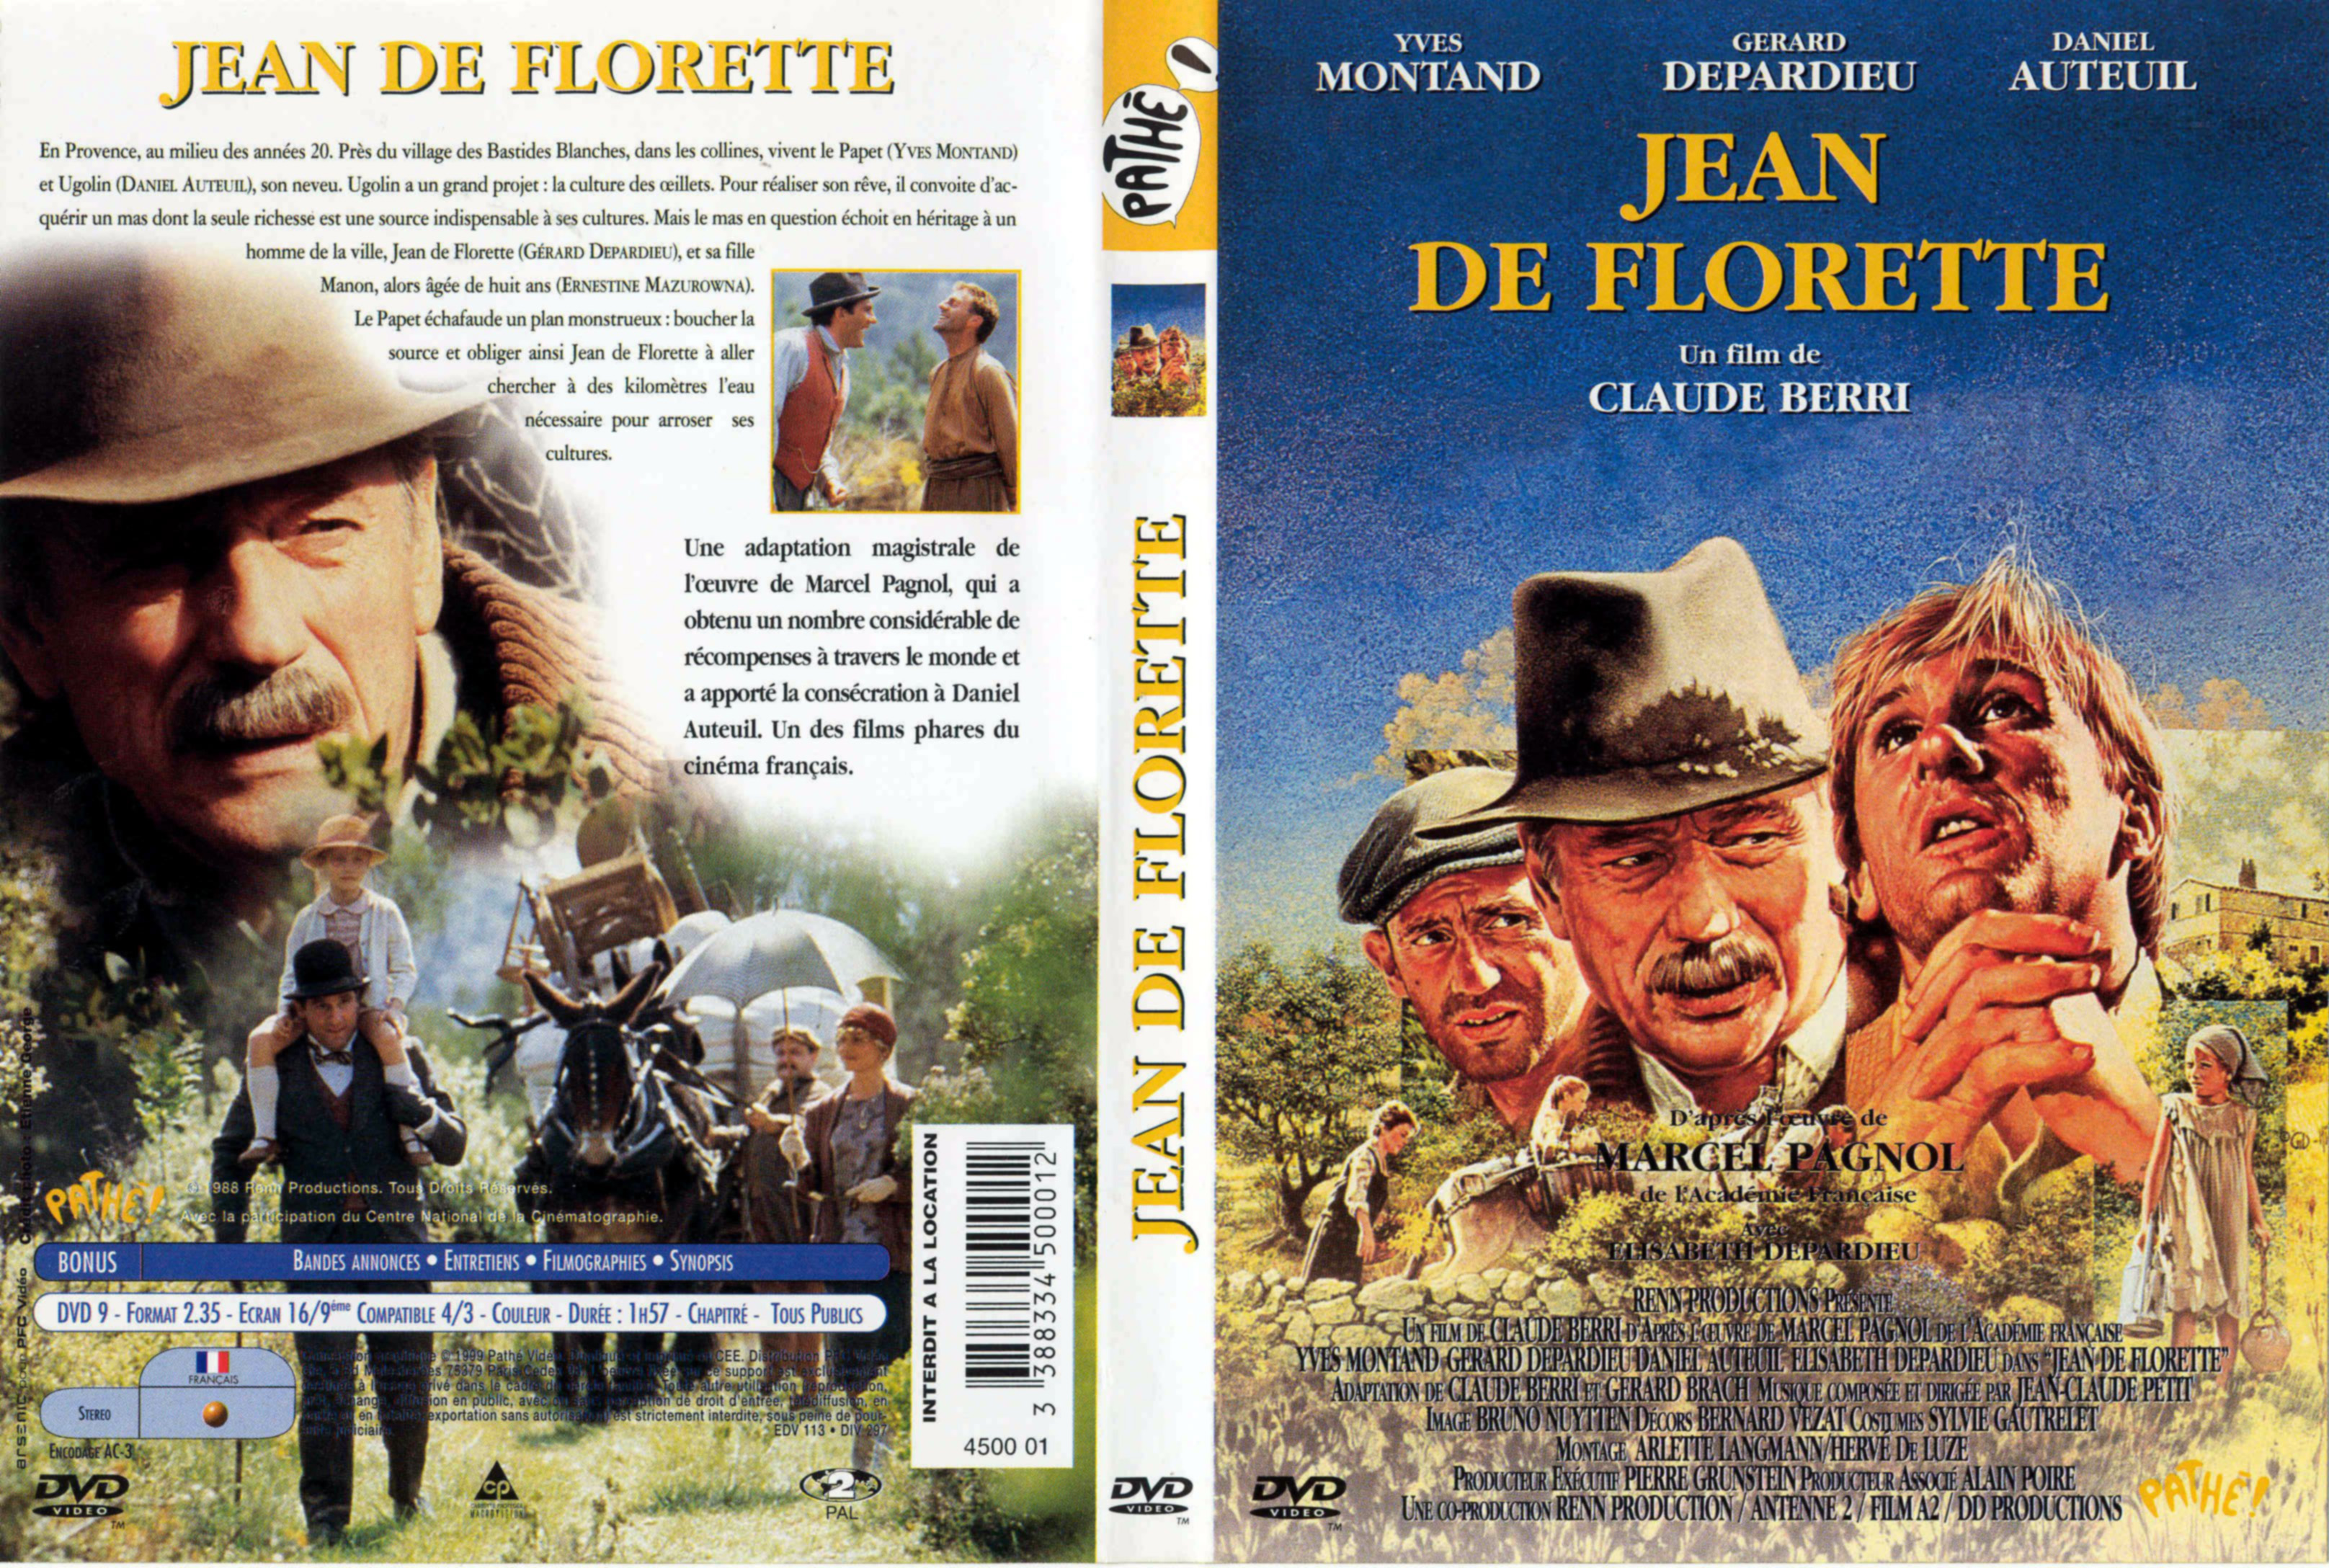 Jaquette DVD Jean de Florette